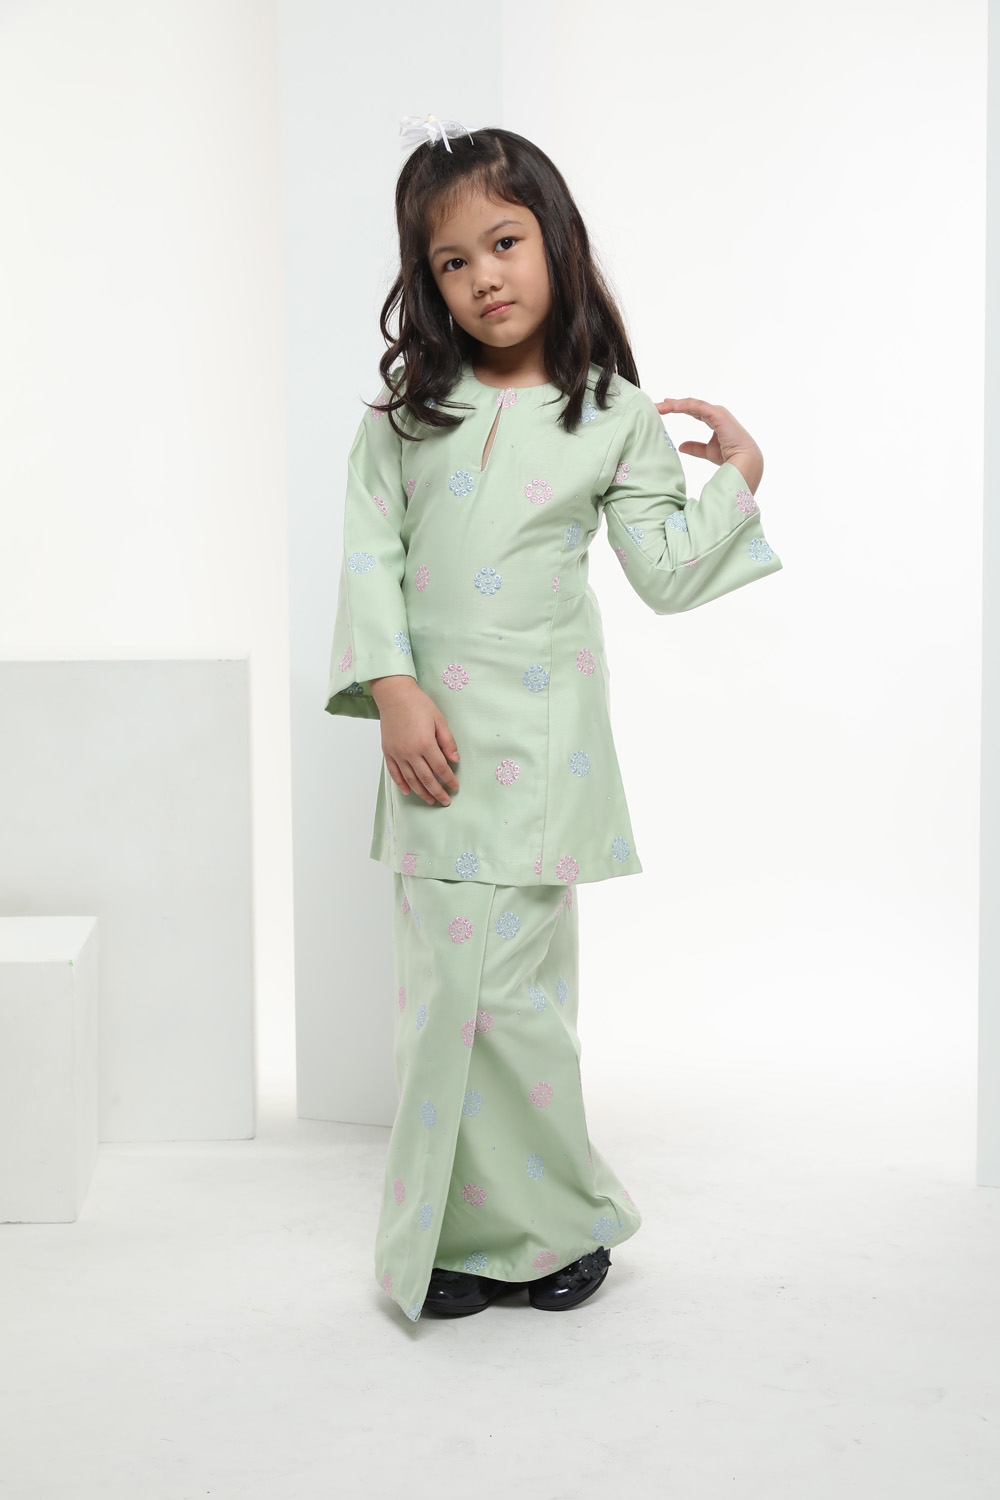  Baju  Kurung Warna  Warni  Kids Biege Green Omar Ali